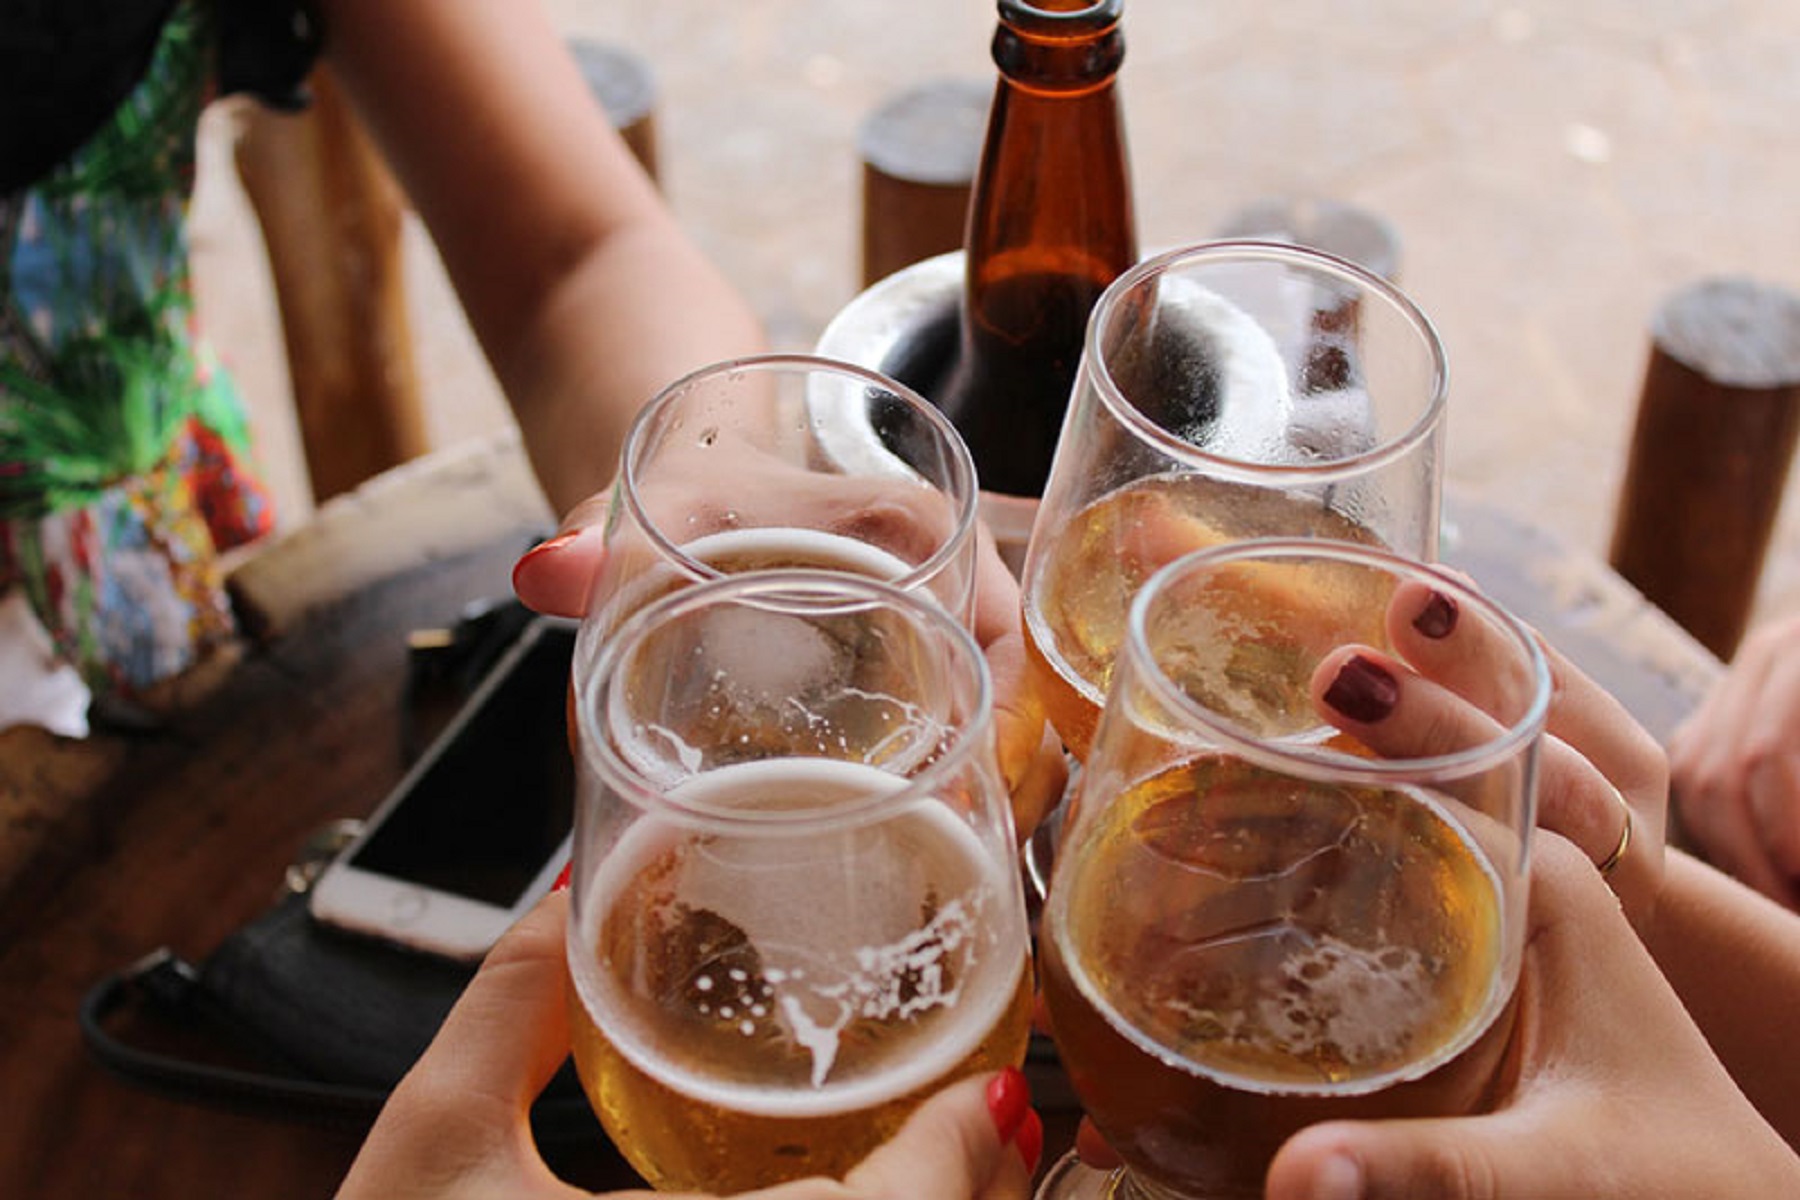 Ηνωμένο Βασίλειο: Οι ειδικοί προειδοποιούν ότι η κοινωνία έχει «ξετρελαθεί επικίνδυνα» με το αλκοόλ